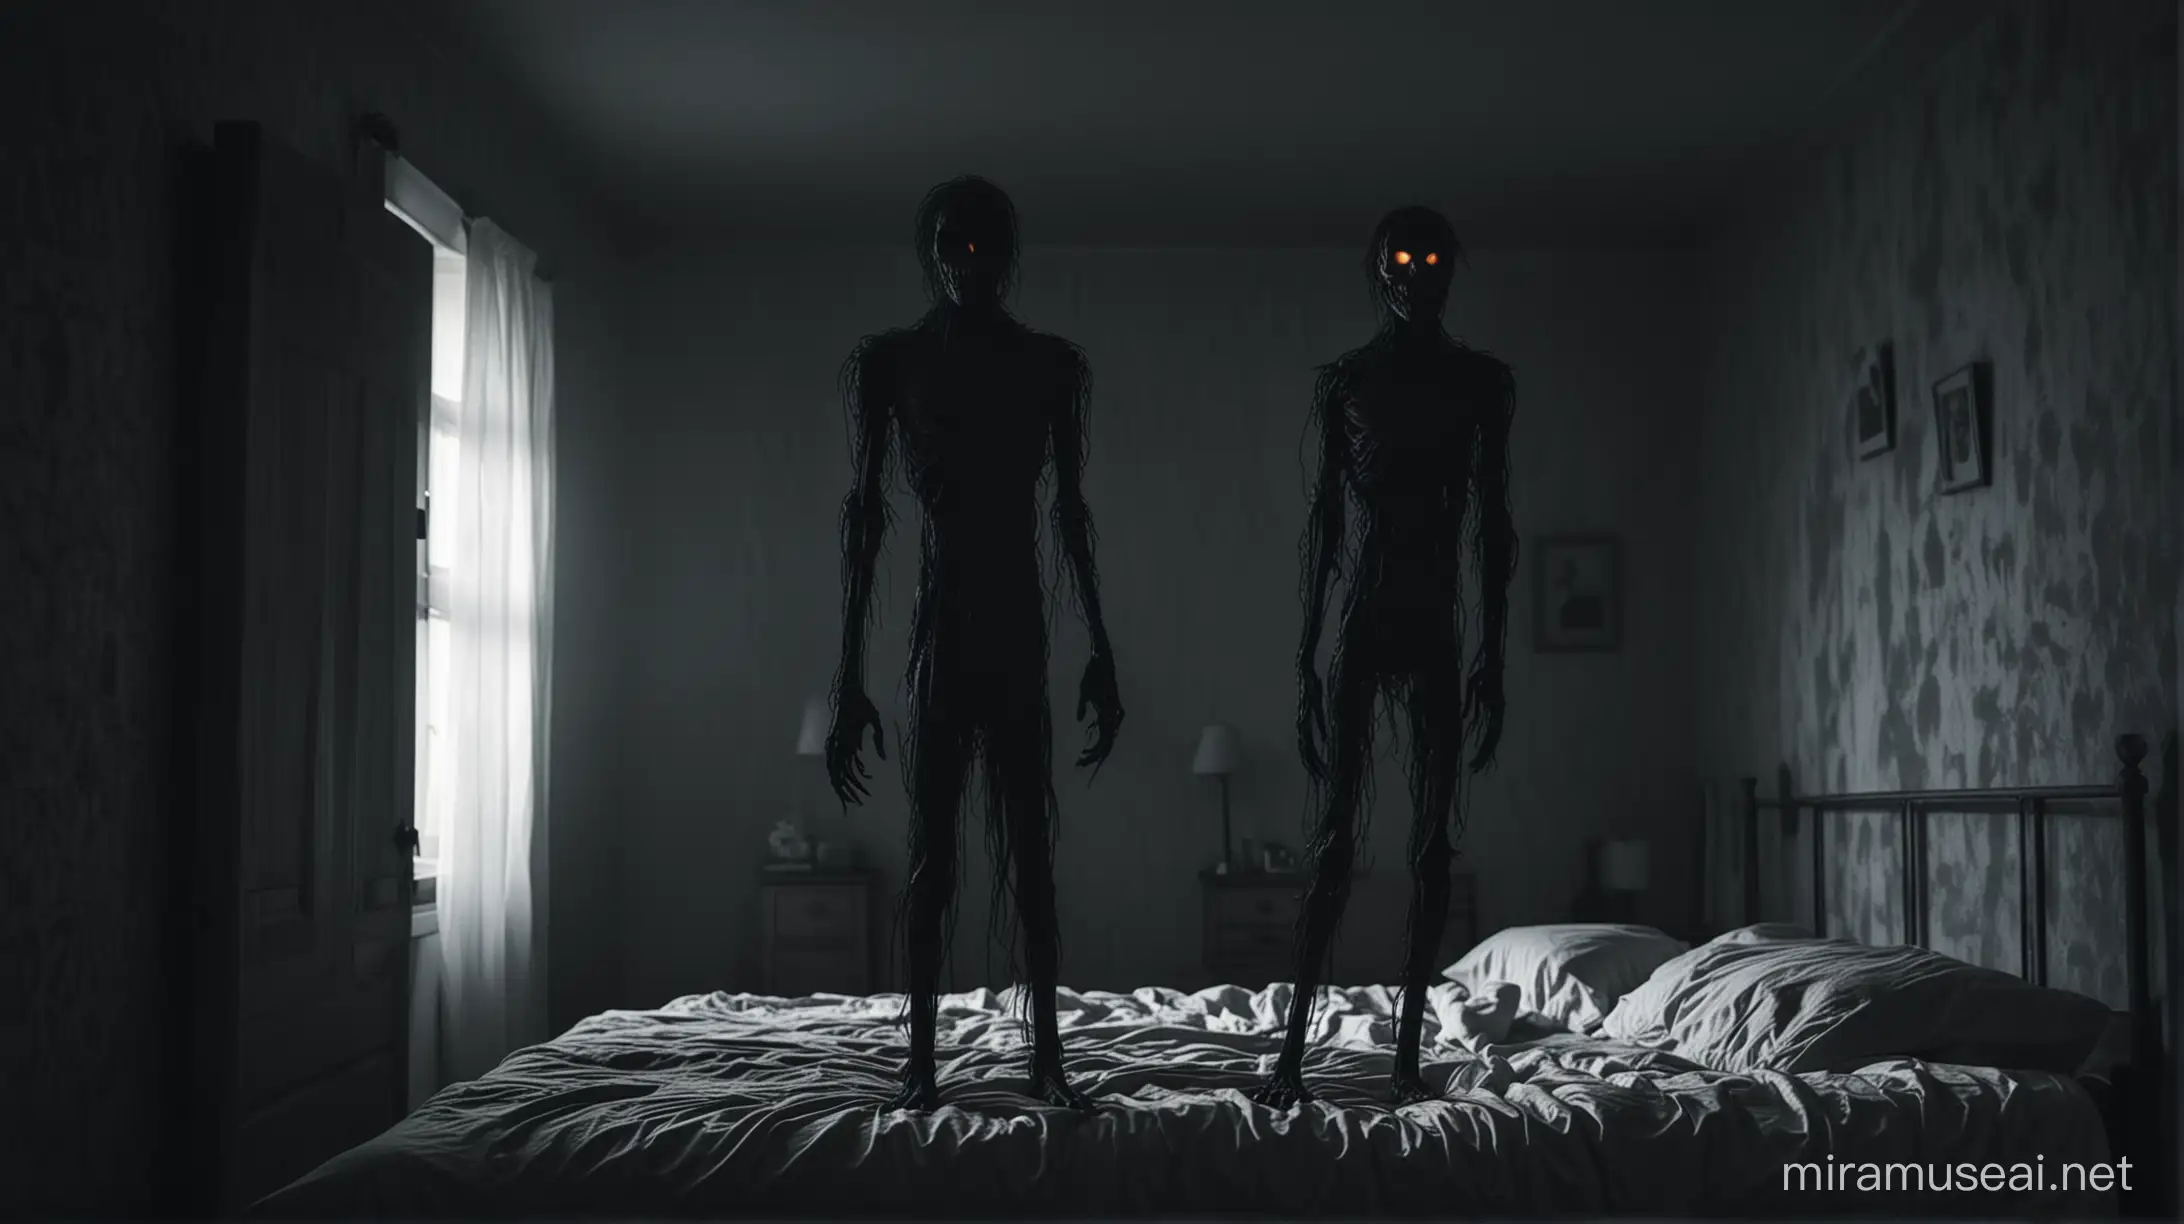 Eerie Figure Lurking in Shadowy Bedroom